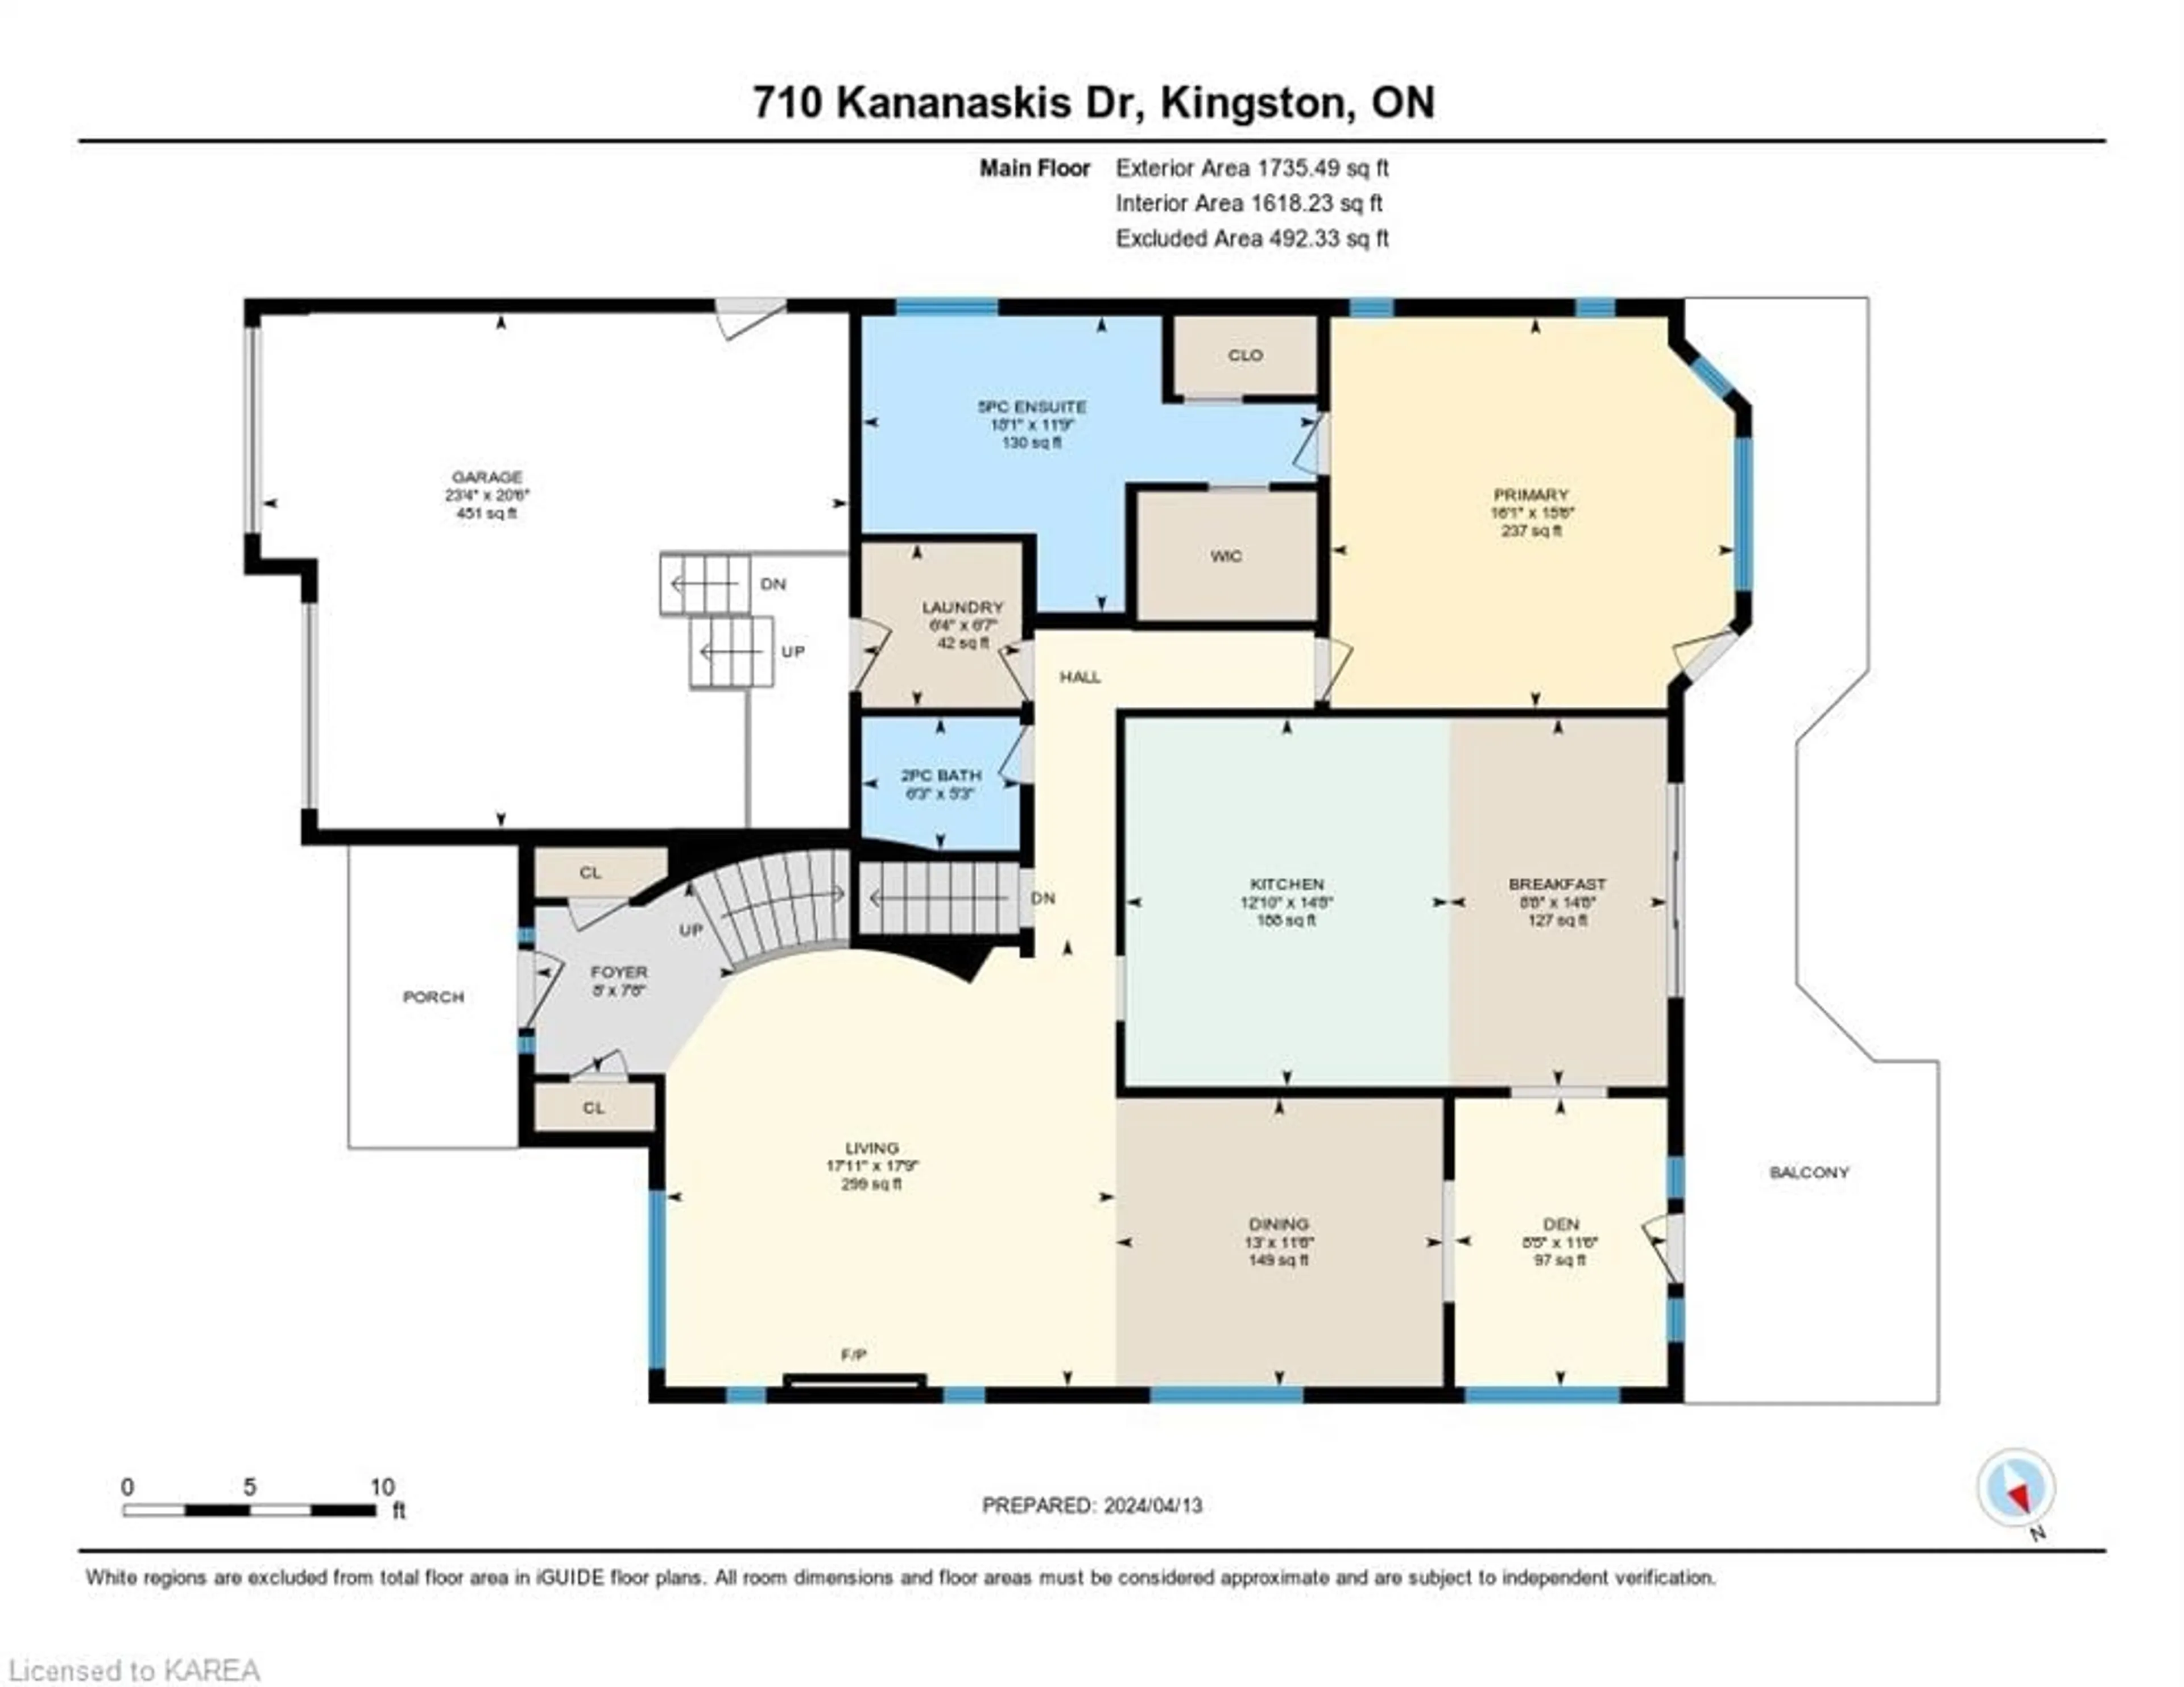 Floor plan for 710 Kananaskis Dr, Kingston Ontario K7P 0A9